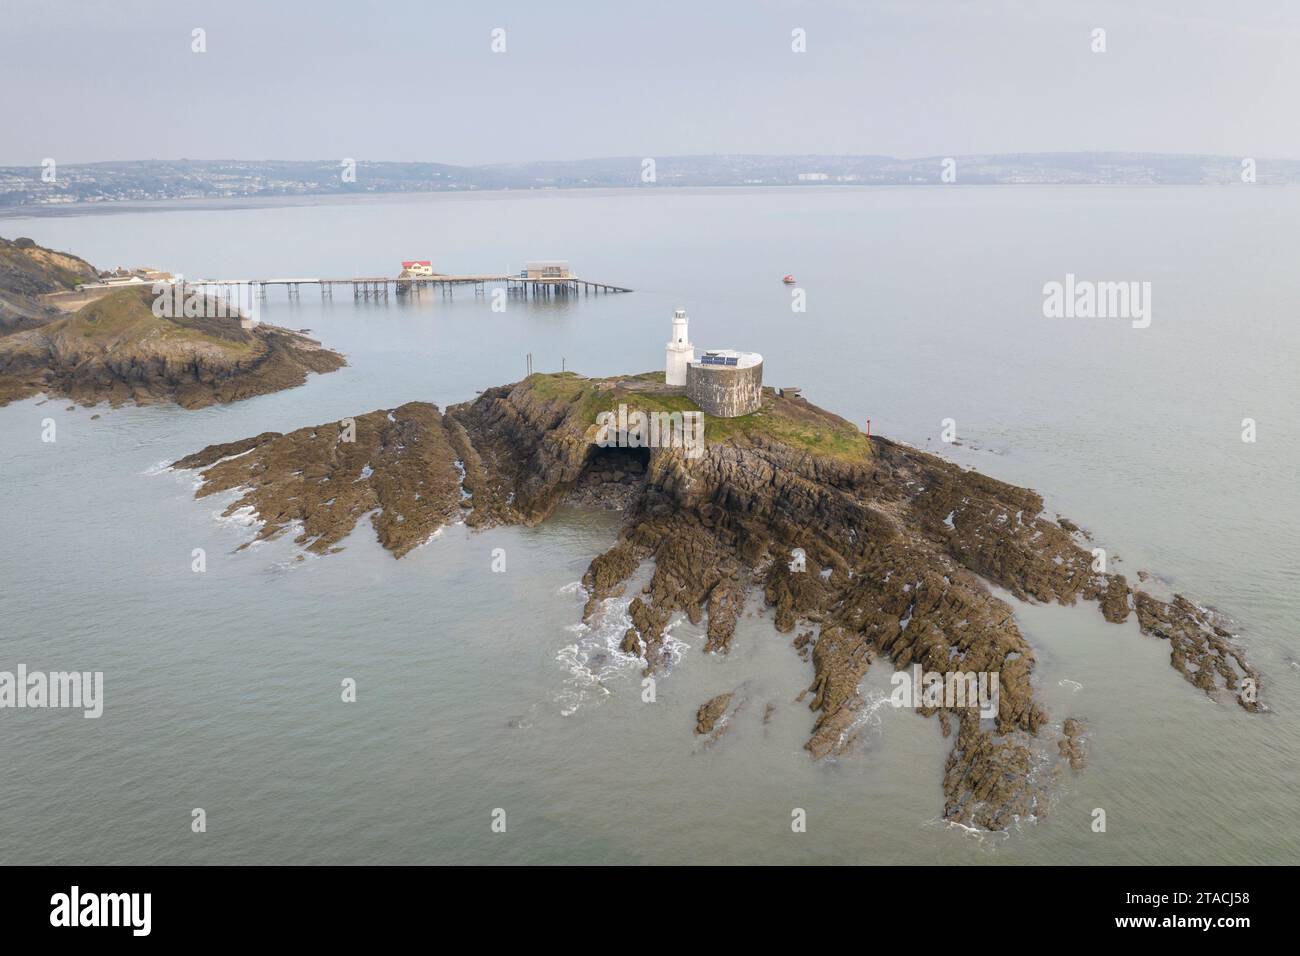 Vue aérienne du phare de Mumbles et de la jetée à l'extrémité est de la péninsule de Gower, Swansea, pays de Galles, Royaume-Uni. Printemps (mars) 2022. Banque D'Images